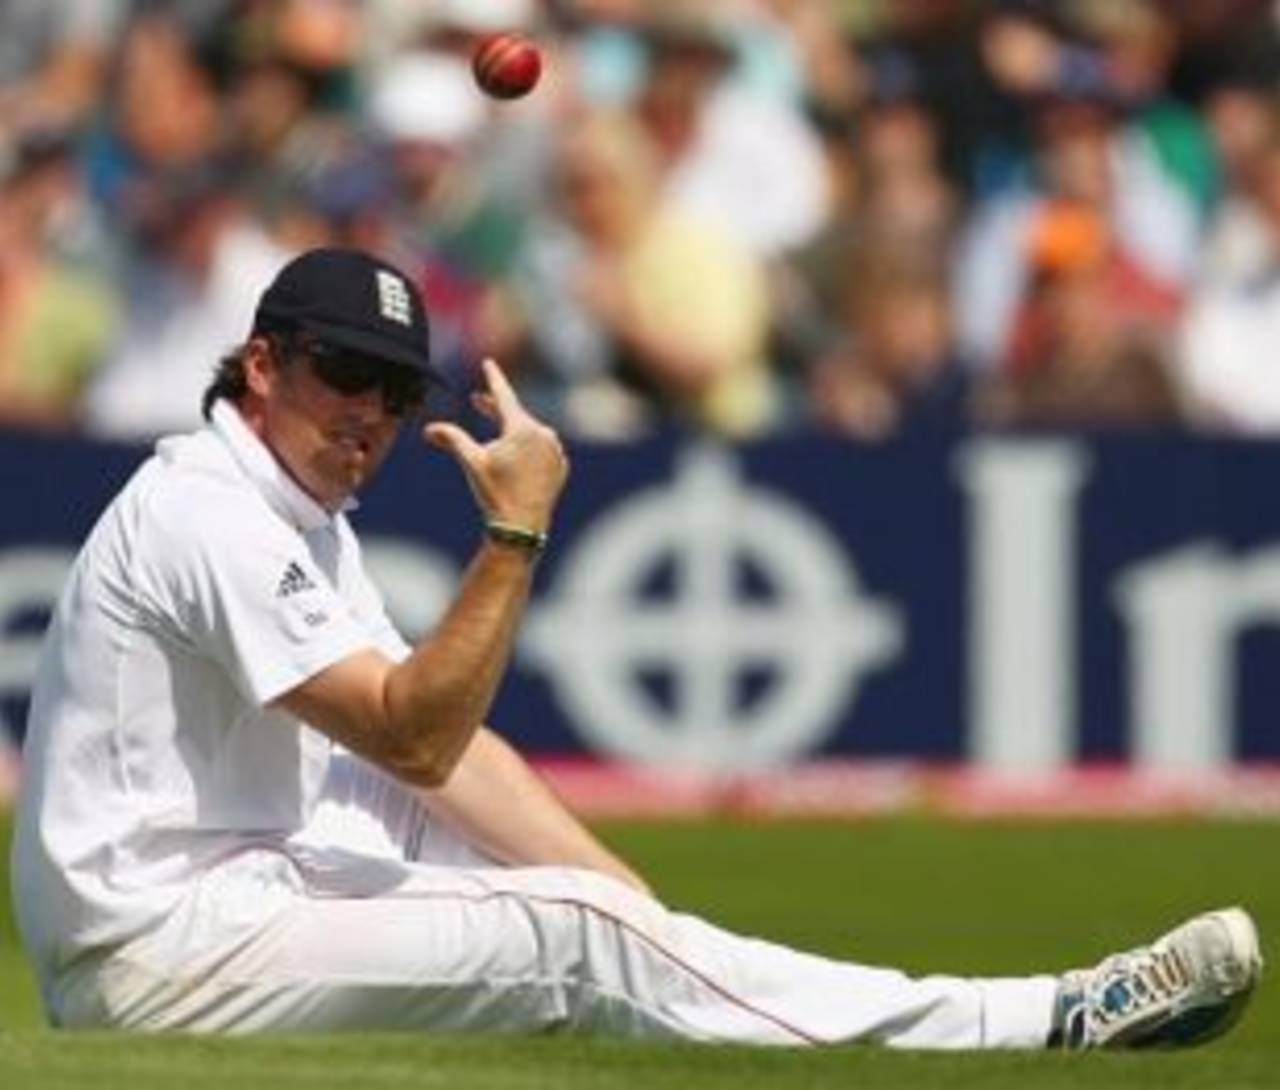 Graeme Swann tosses the ball, England v Australia, 4th Test, Headingley, 2nd day, August 8, 2009